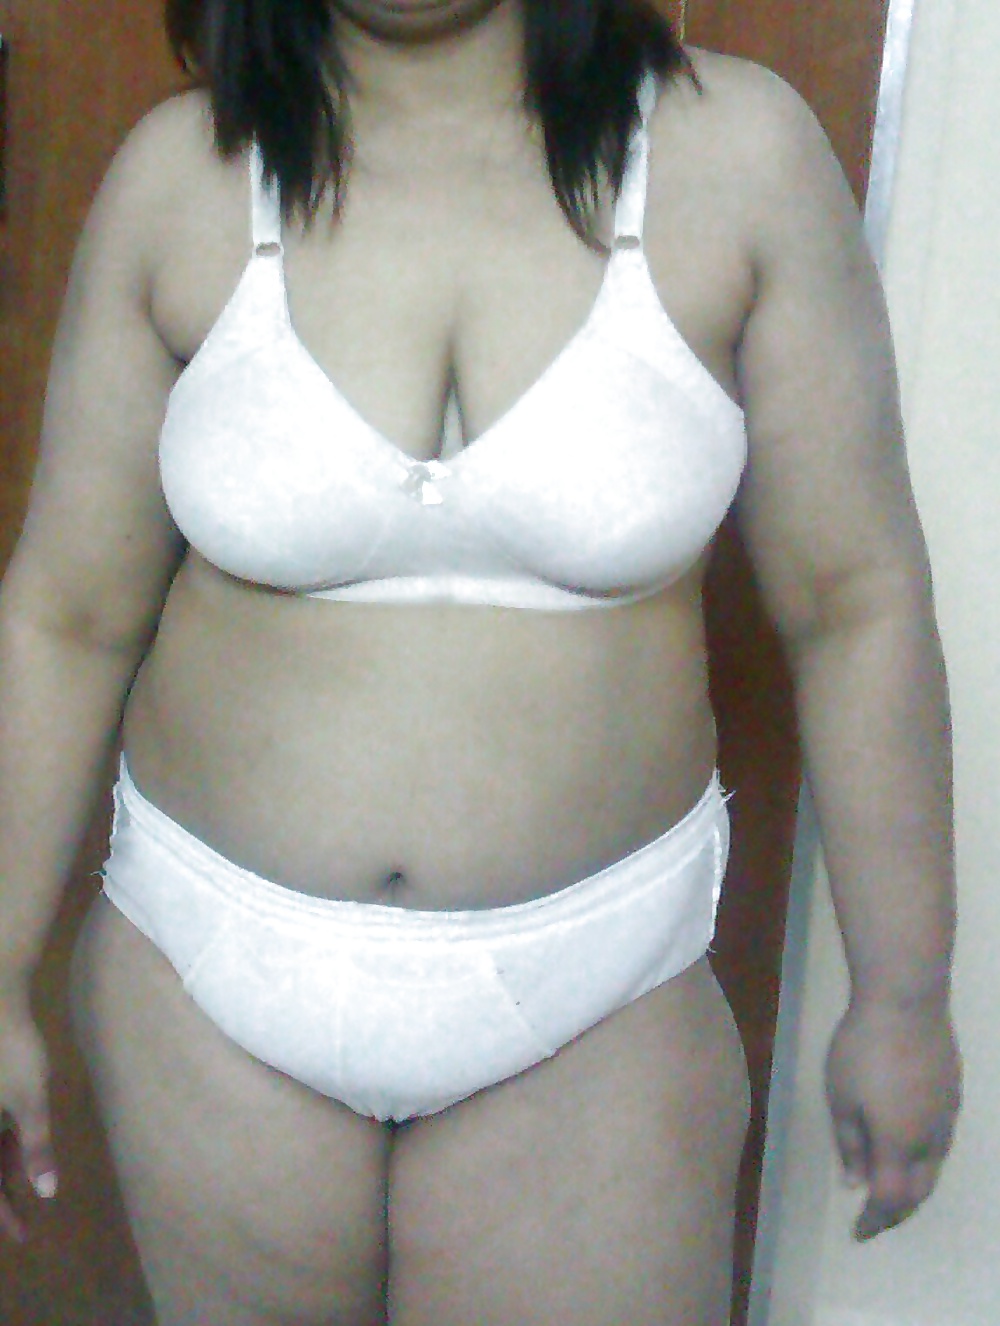 Indian wife bra wear #28052634